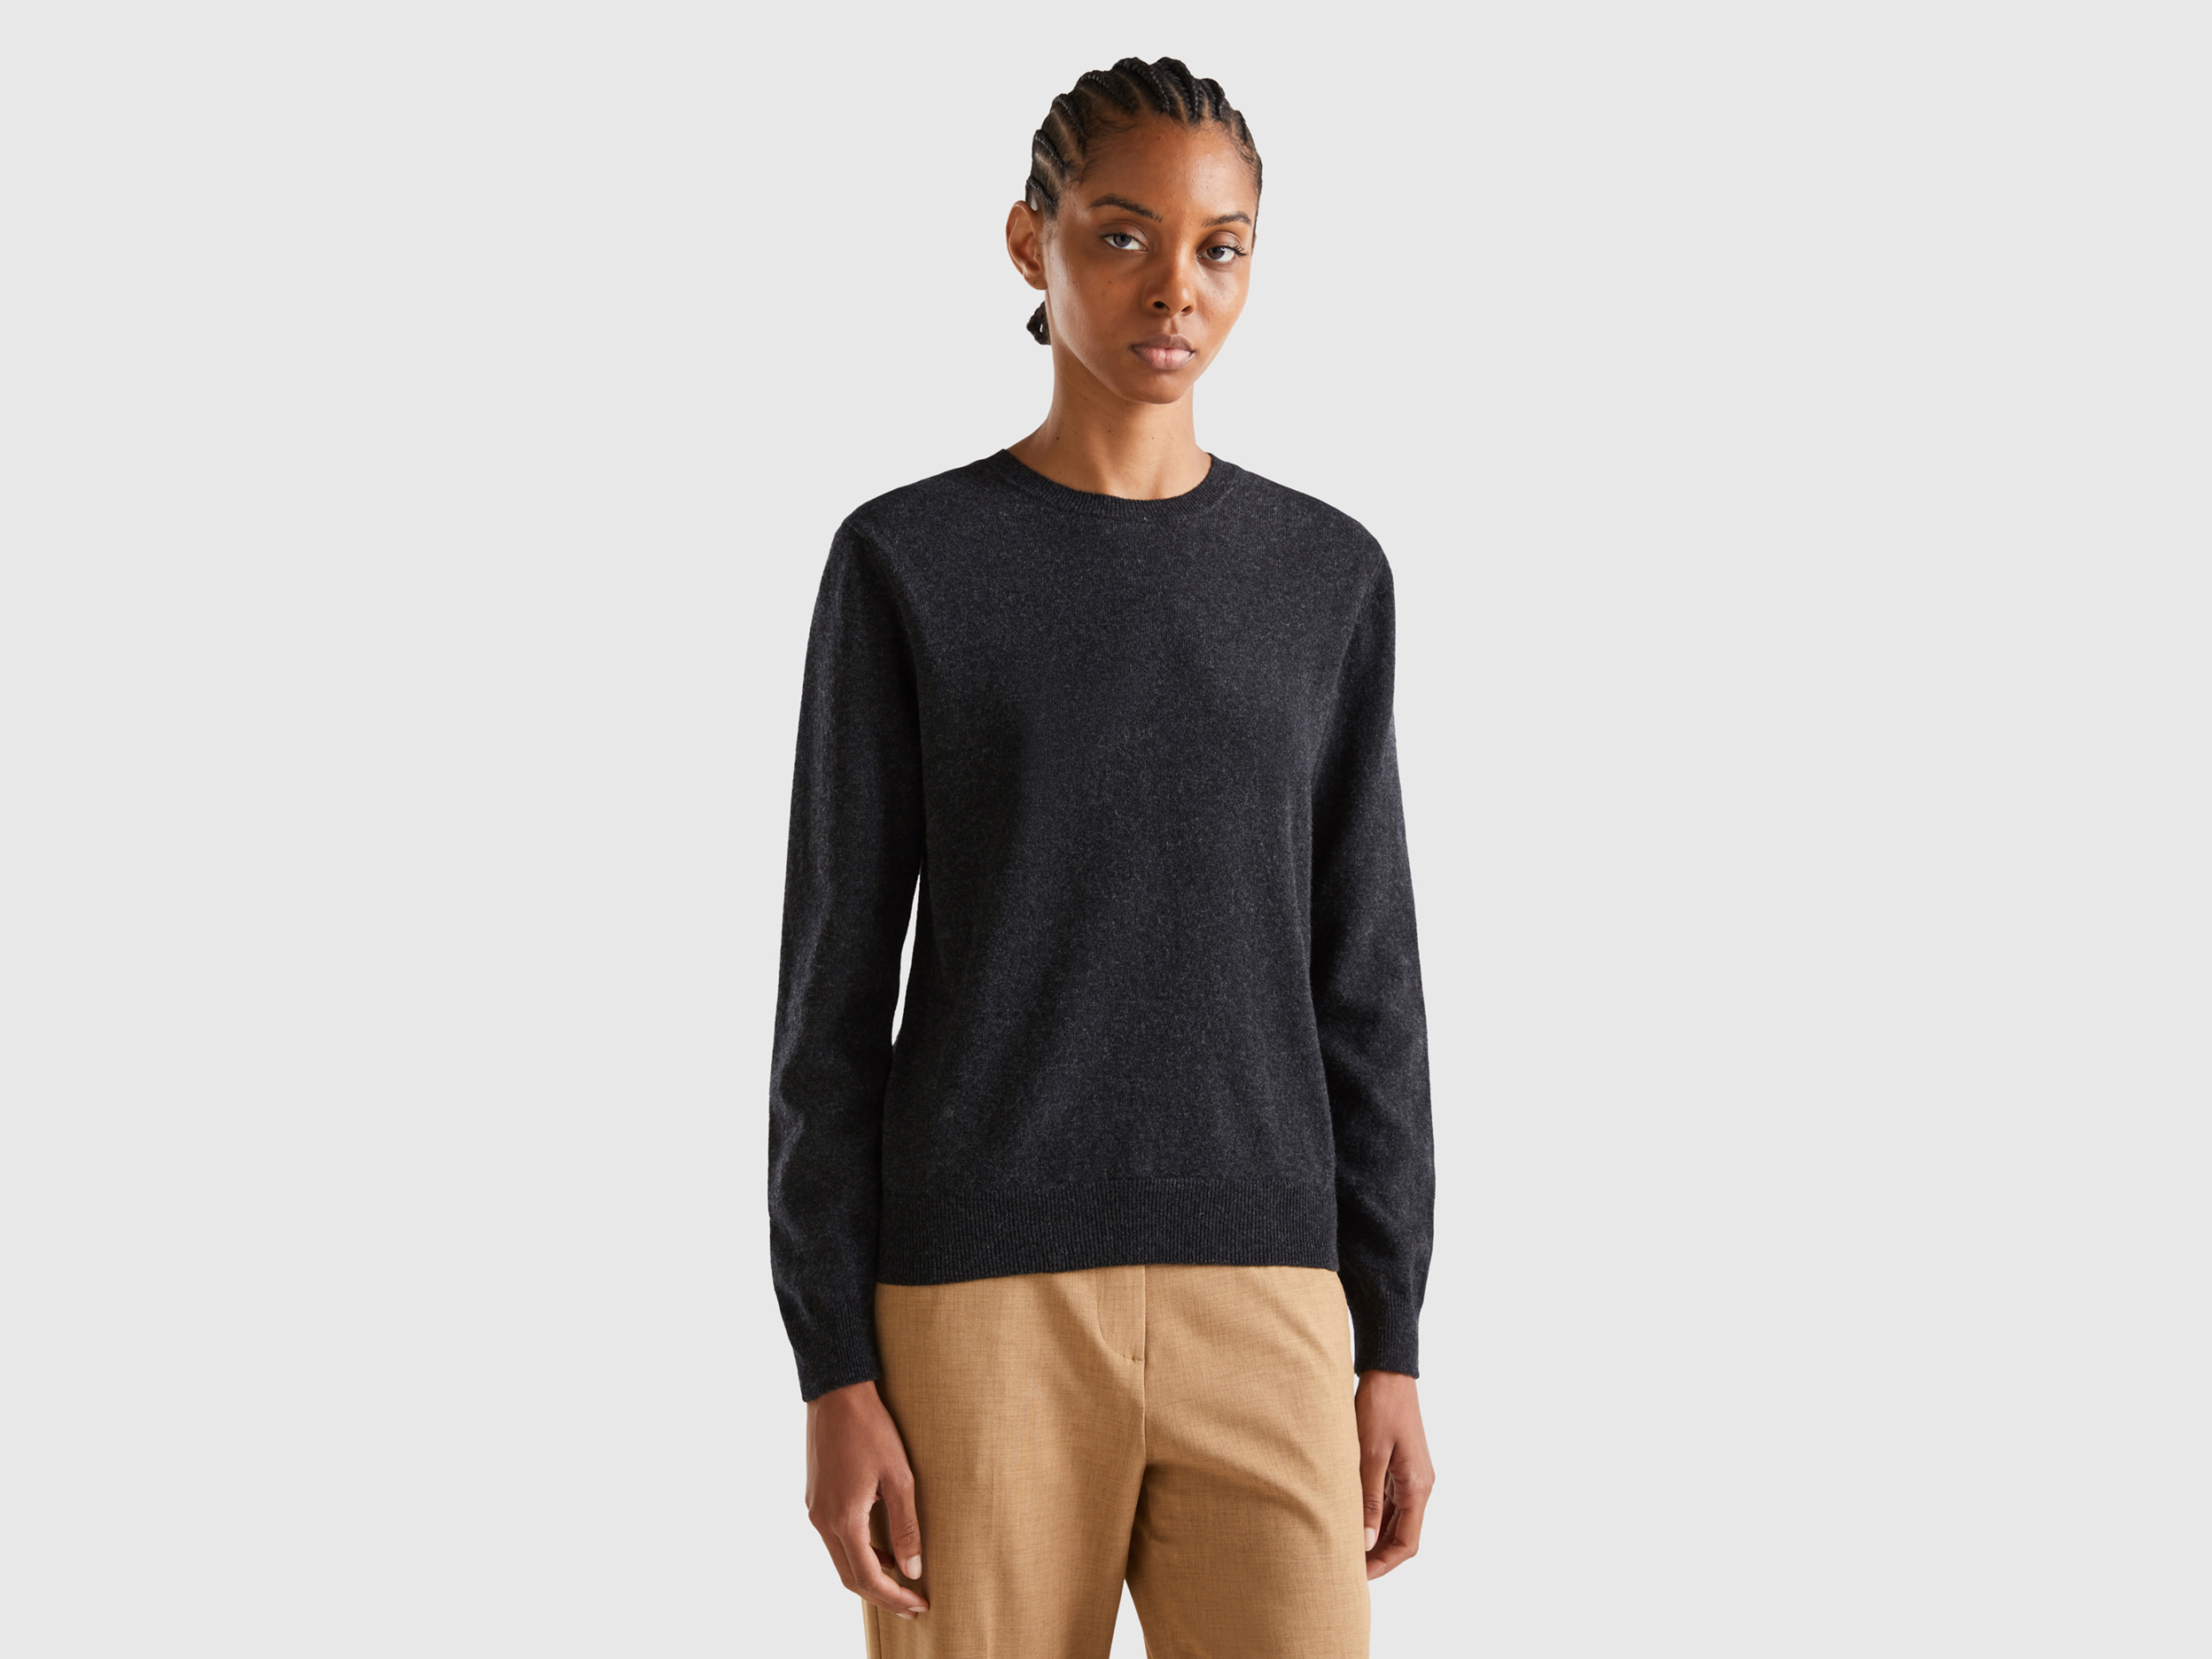 Benetton, Charcoal Gray Crew Neck Sweater In Pure Merino Wool, size XS, Dark Gray, Women